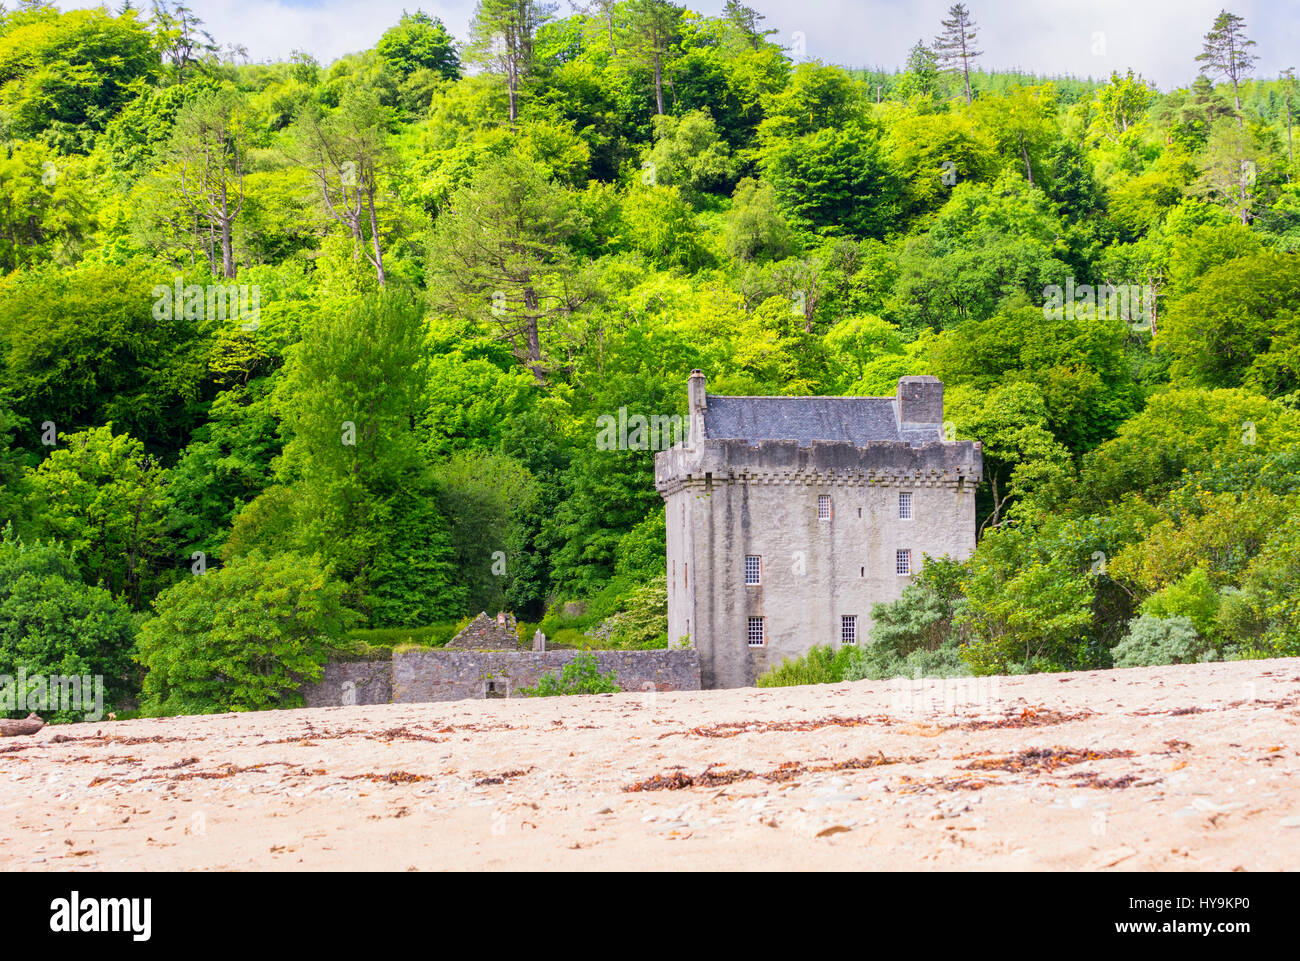 Saddell Castle ist ein aus dem 16. Jahrhundert-Turmhaus am Ufer des Kilbrannan Sound in der Nähe von Saddell, Kintyre, Argyll und Bute, Schottland. Stockfoto